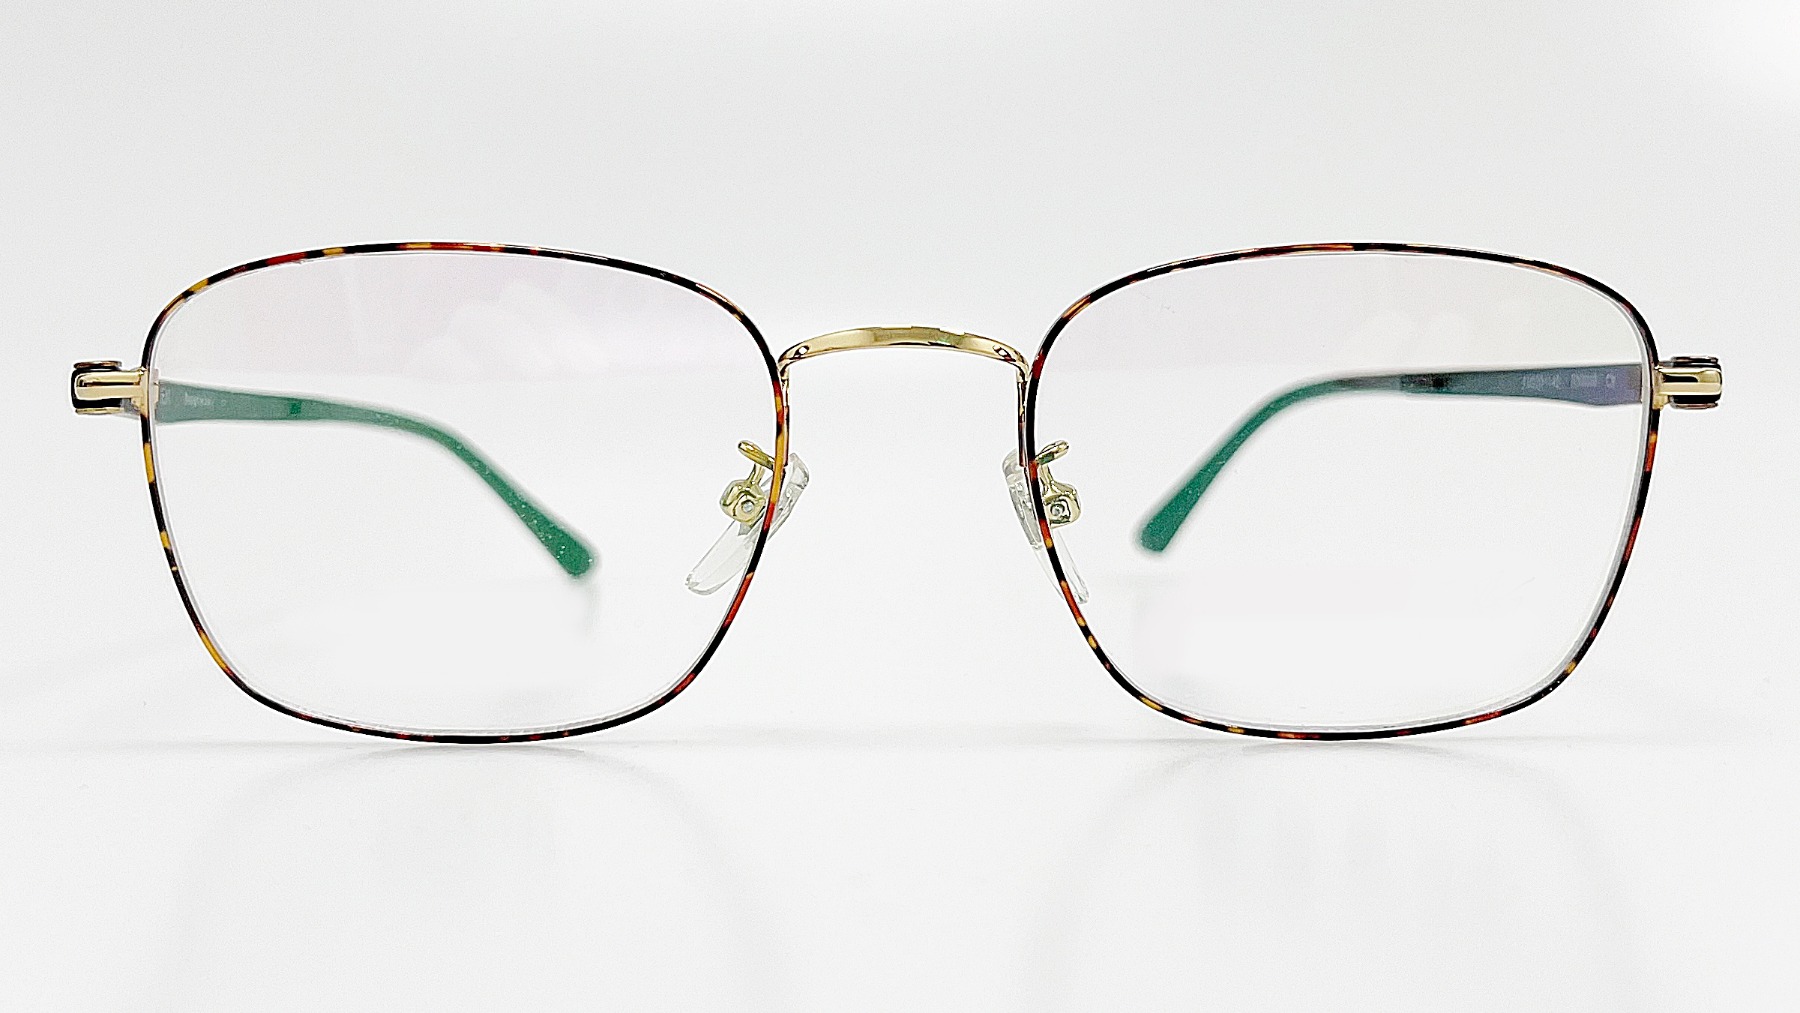 HORIEN_HN8040, Korean glasses, sunglasses, eyeglasses, glasses